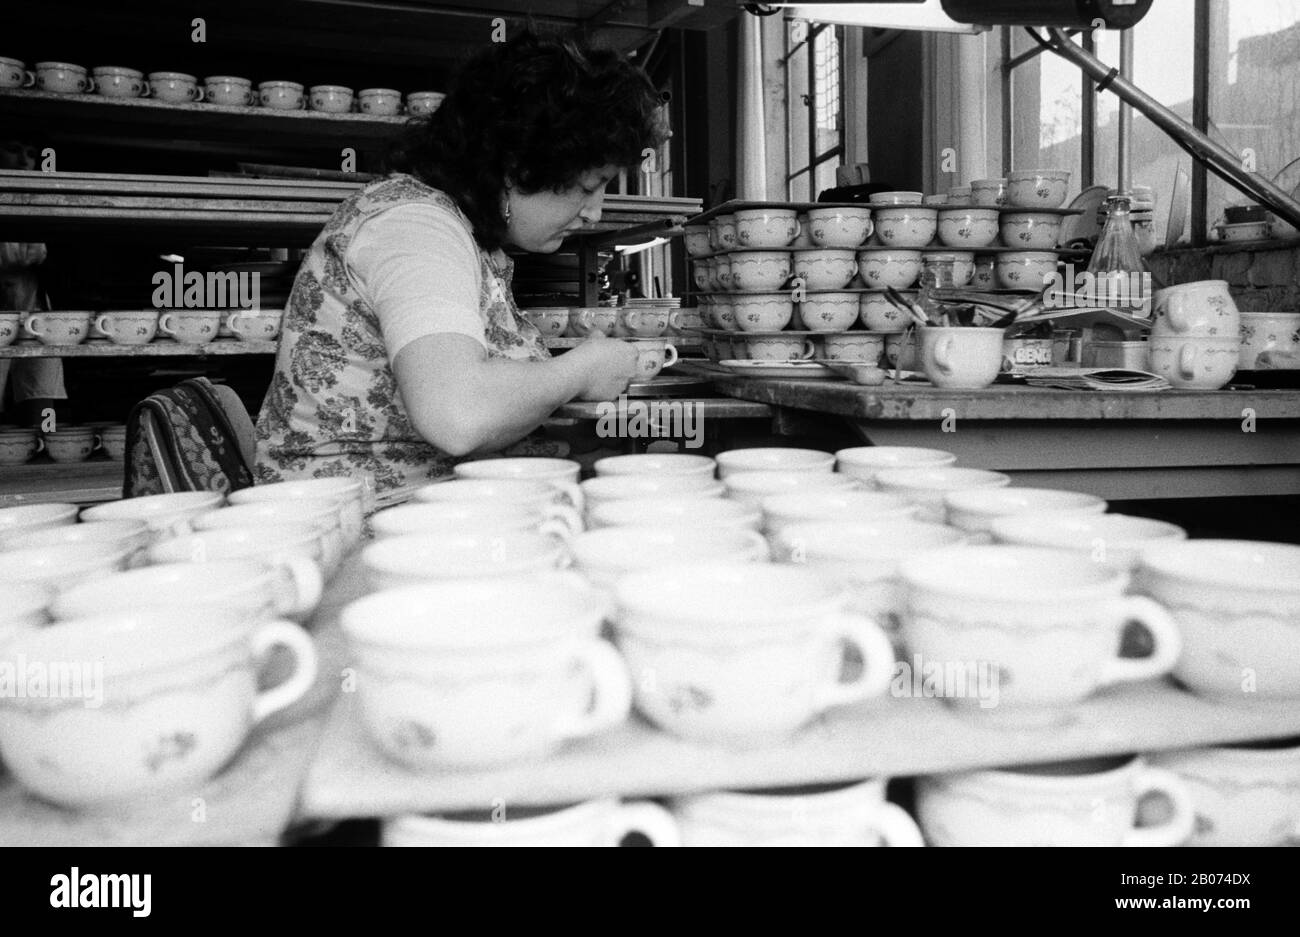 15 de marzo de 1990, Sajonia, Torgau: A principios de la década de 1990,  las tazas fueron pintadas a mano en una fábrica de Torgau, probablemente en  la fábrica de loza VEB